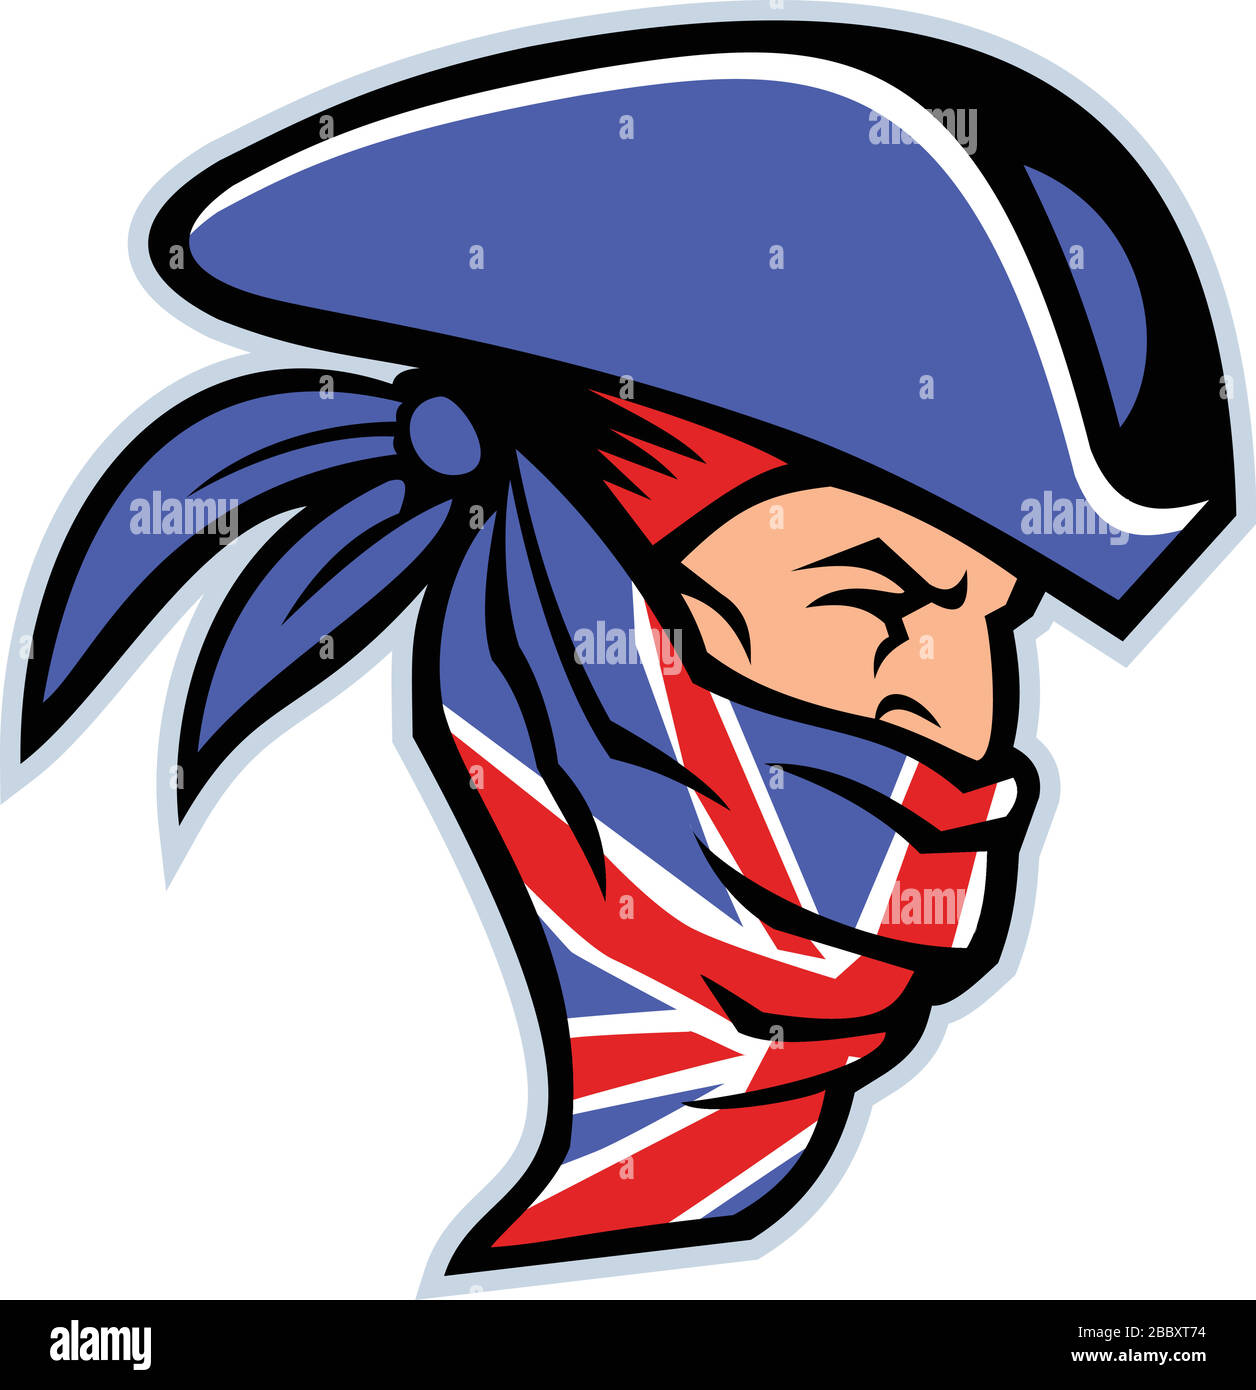 L'icône mascotte illustre la tête d'un homme de haute route britannique, d'un voleur, d'un bandit ou d'une hors-loi qui a volé des voyageurs portant un Union Jack bandana vu fro Illustration de Vecteur